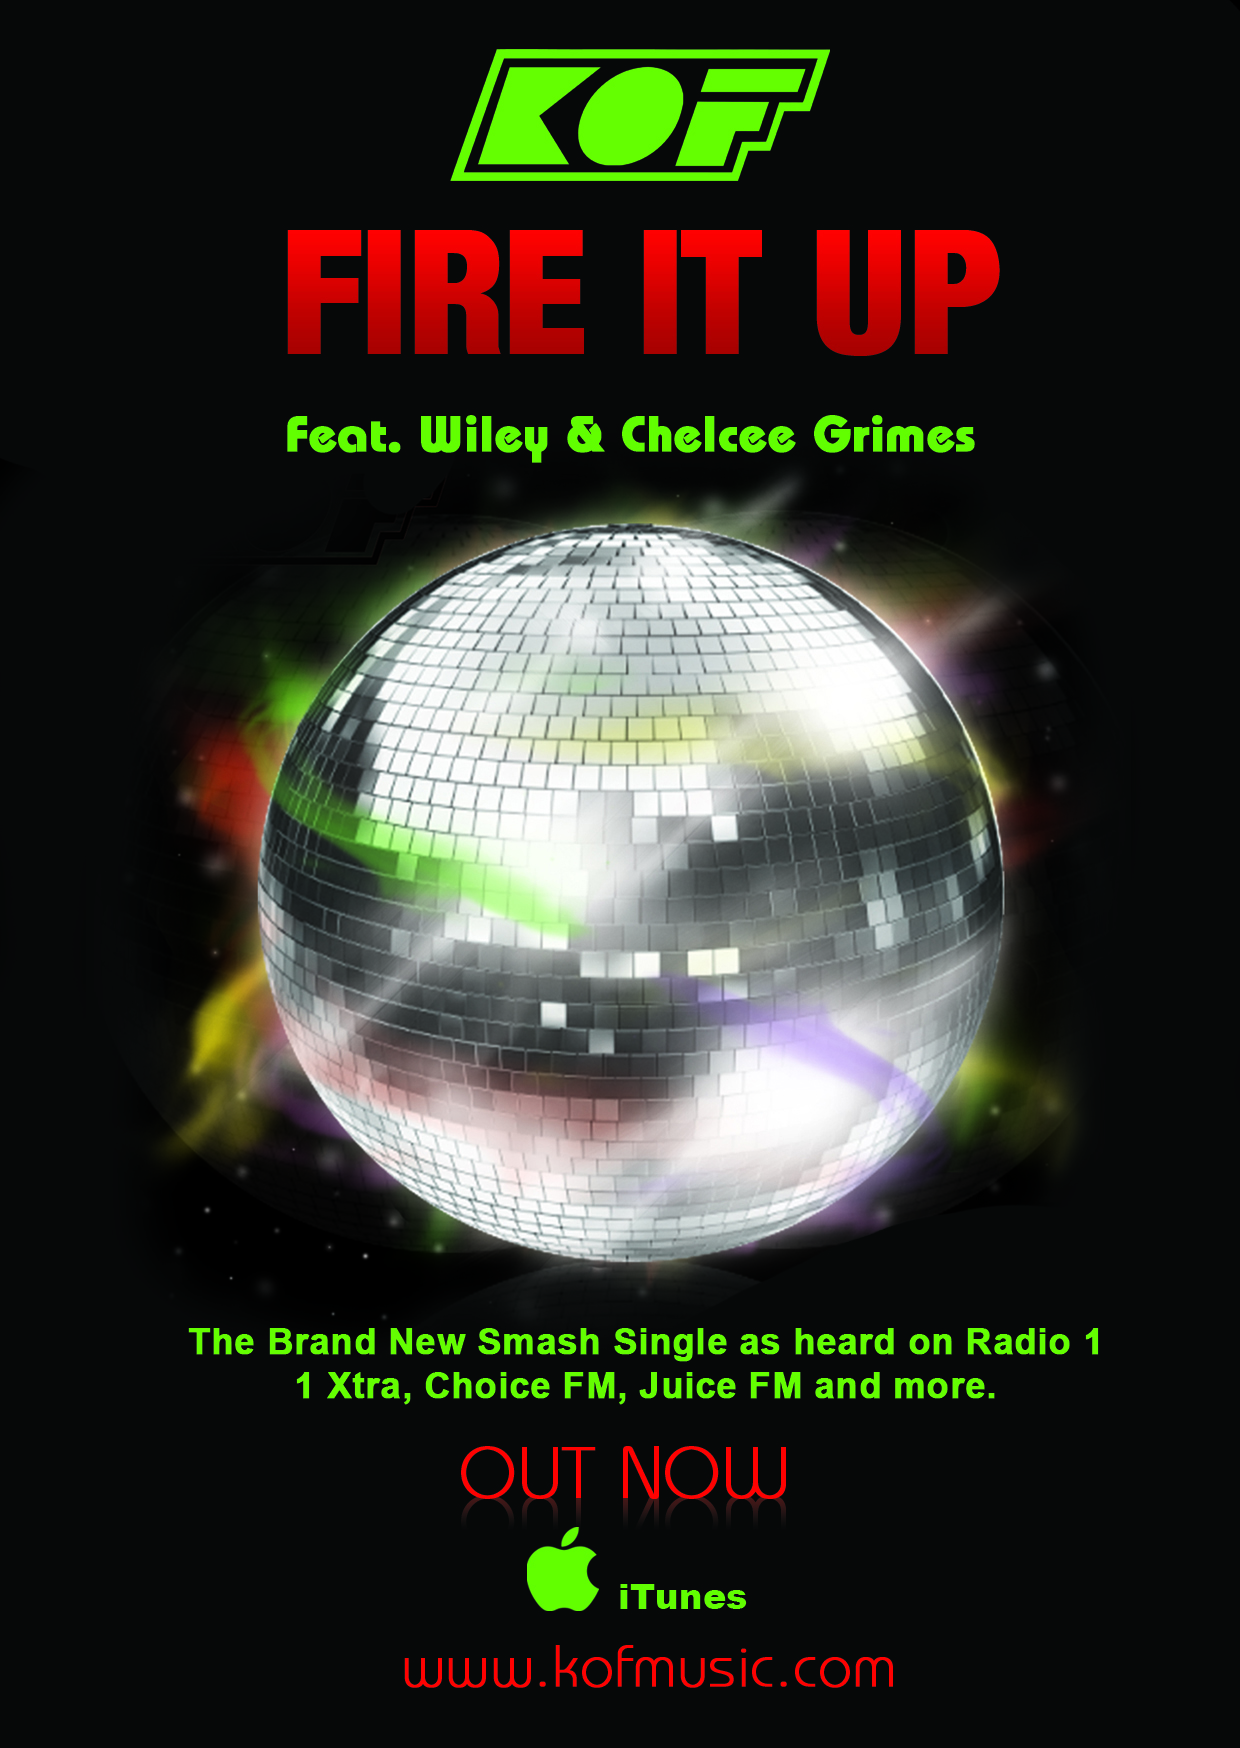 Kof 'Fire It Up' Launch Show